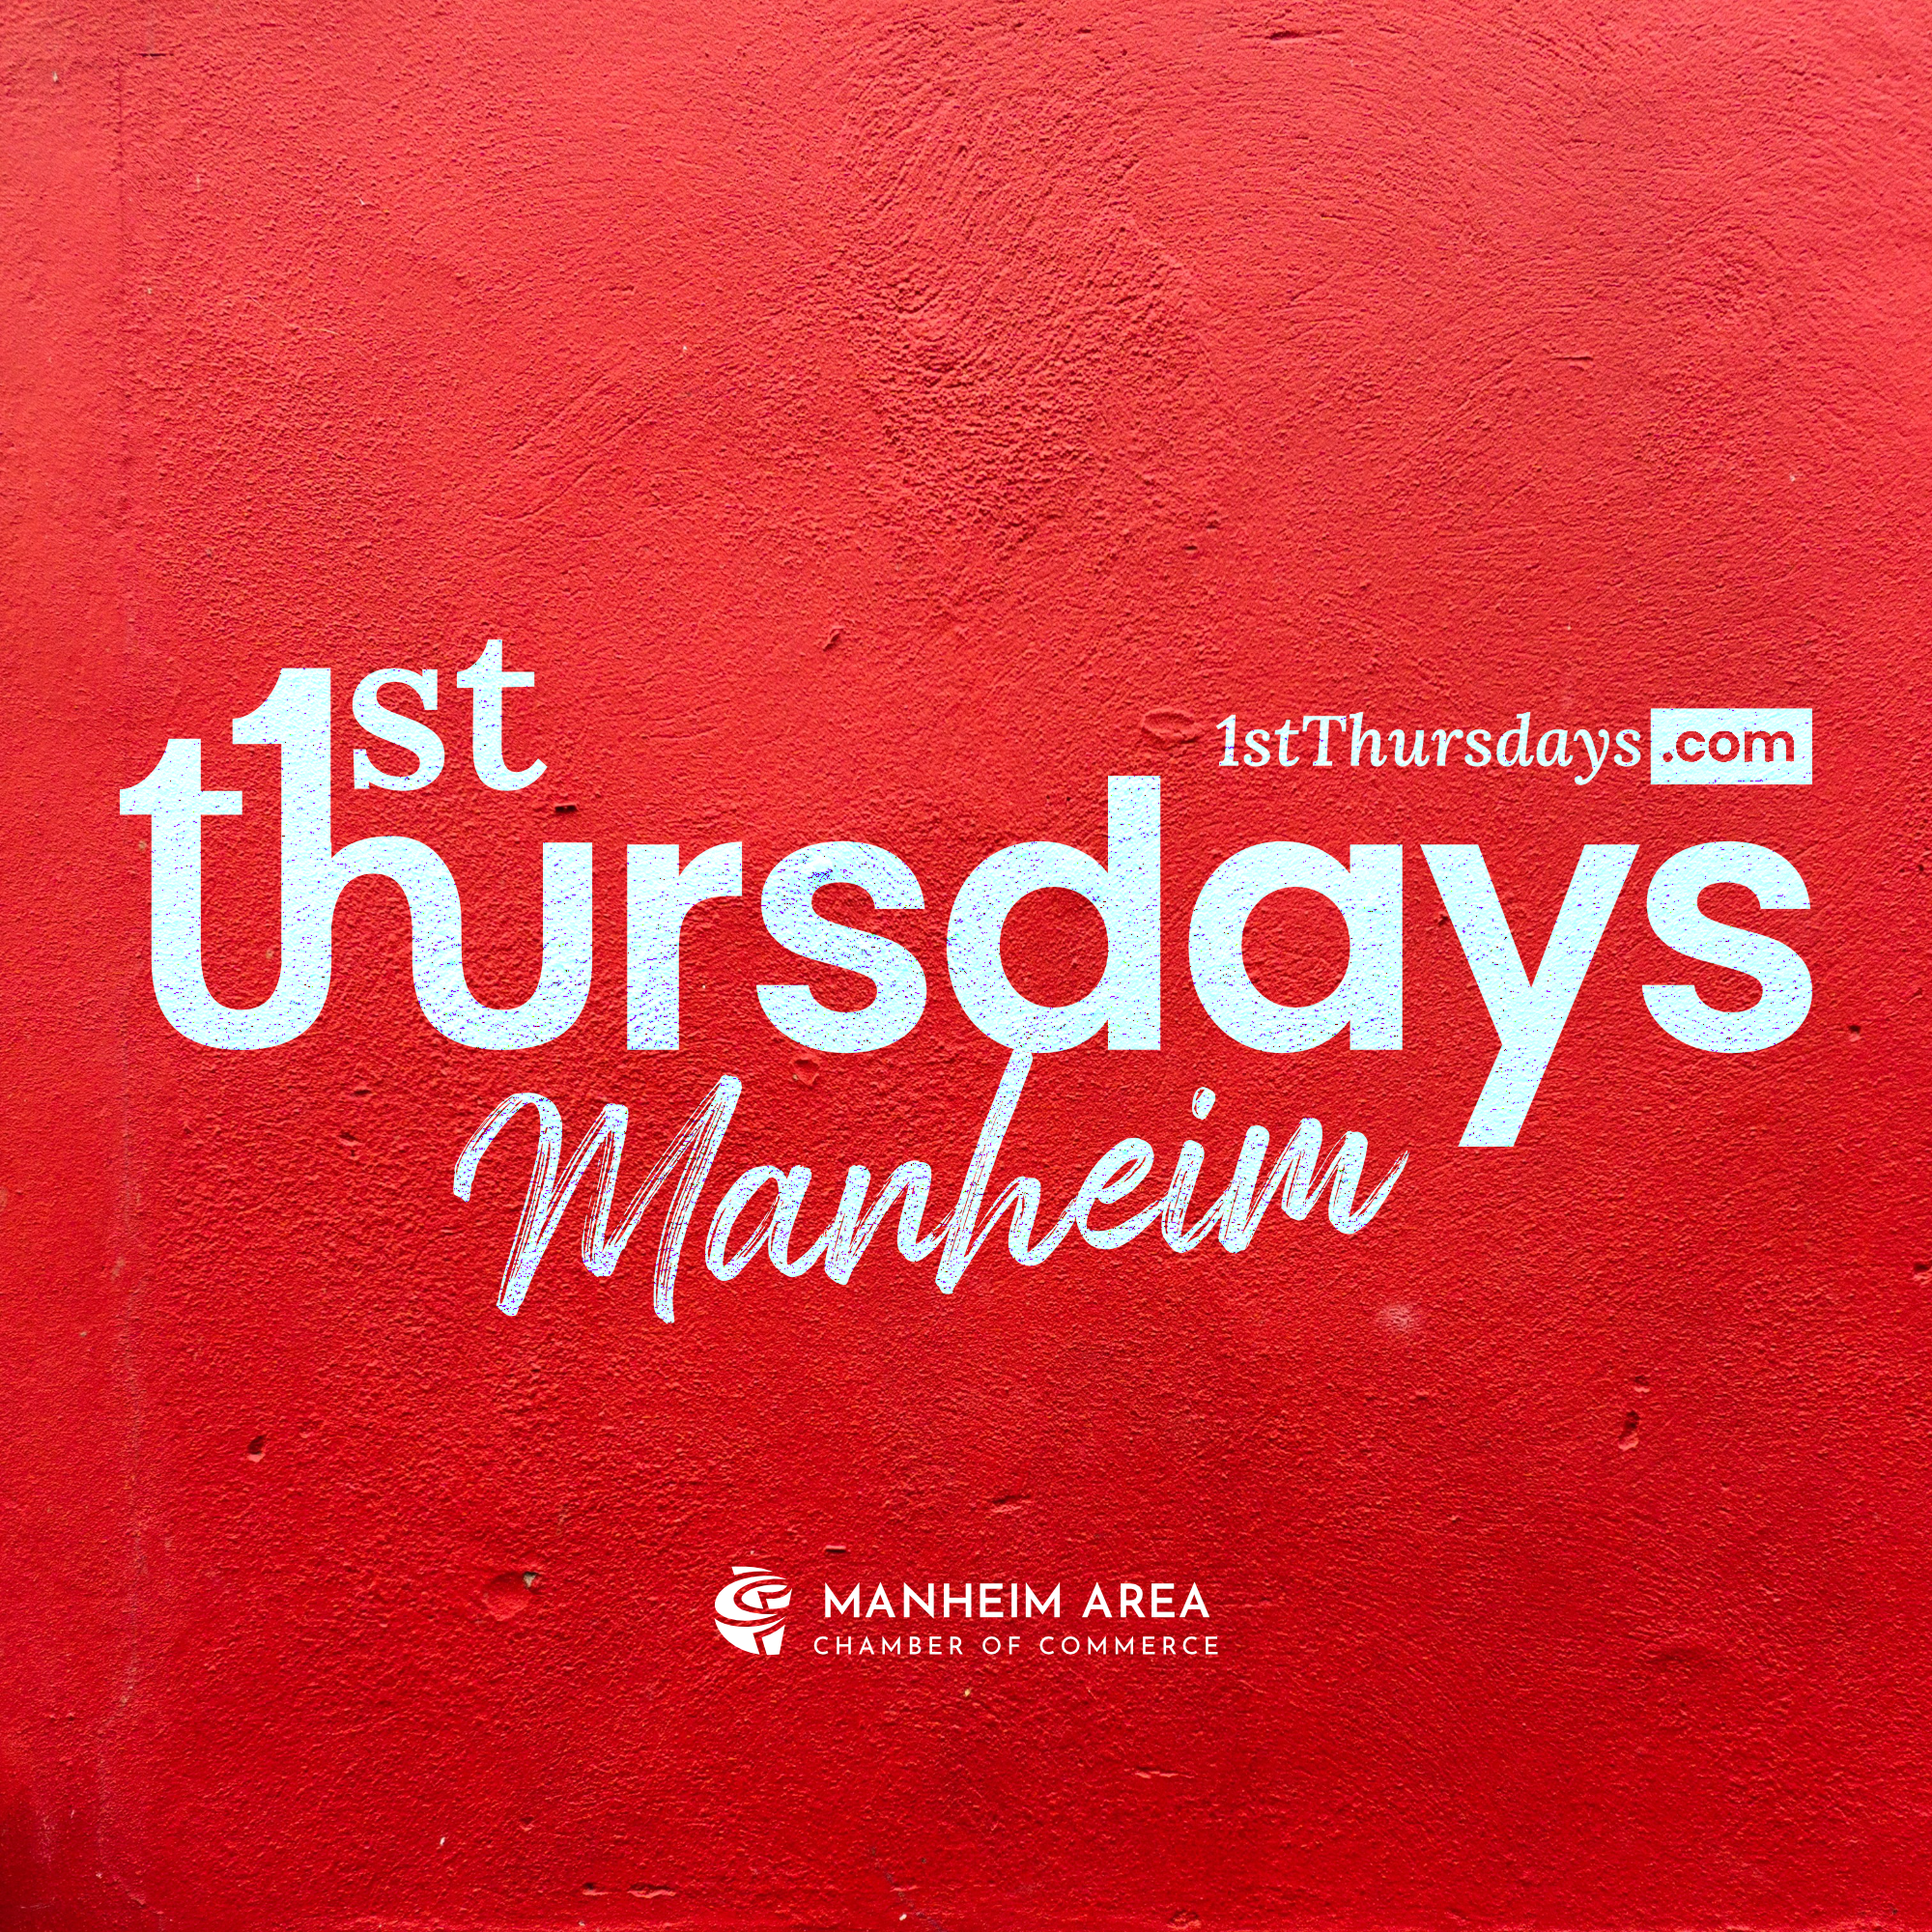 1st Thursdays Manheim